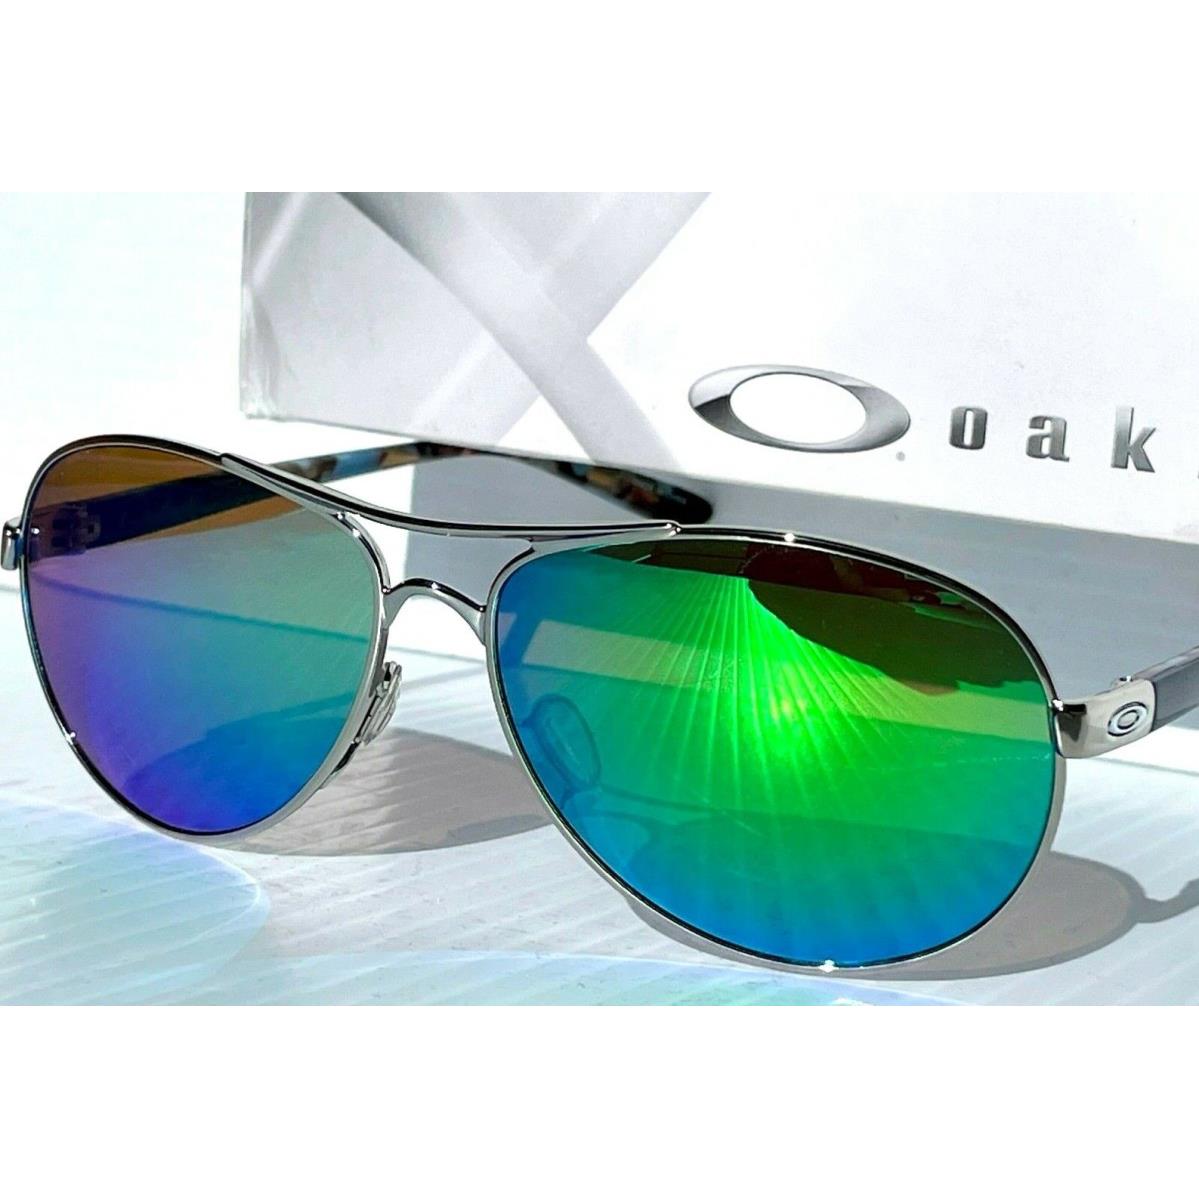 Oakley Feedback Chrome Blue w Polarized Galaxy Jade Green Lens Sunglass 4079